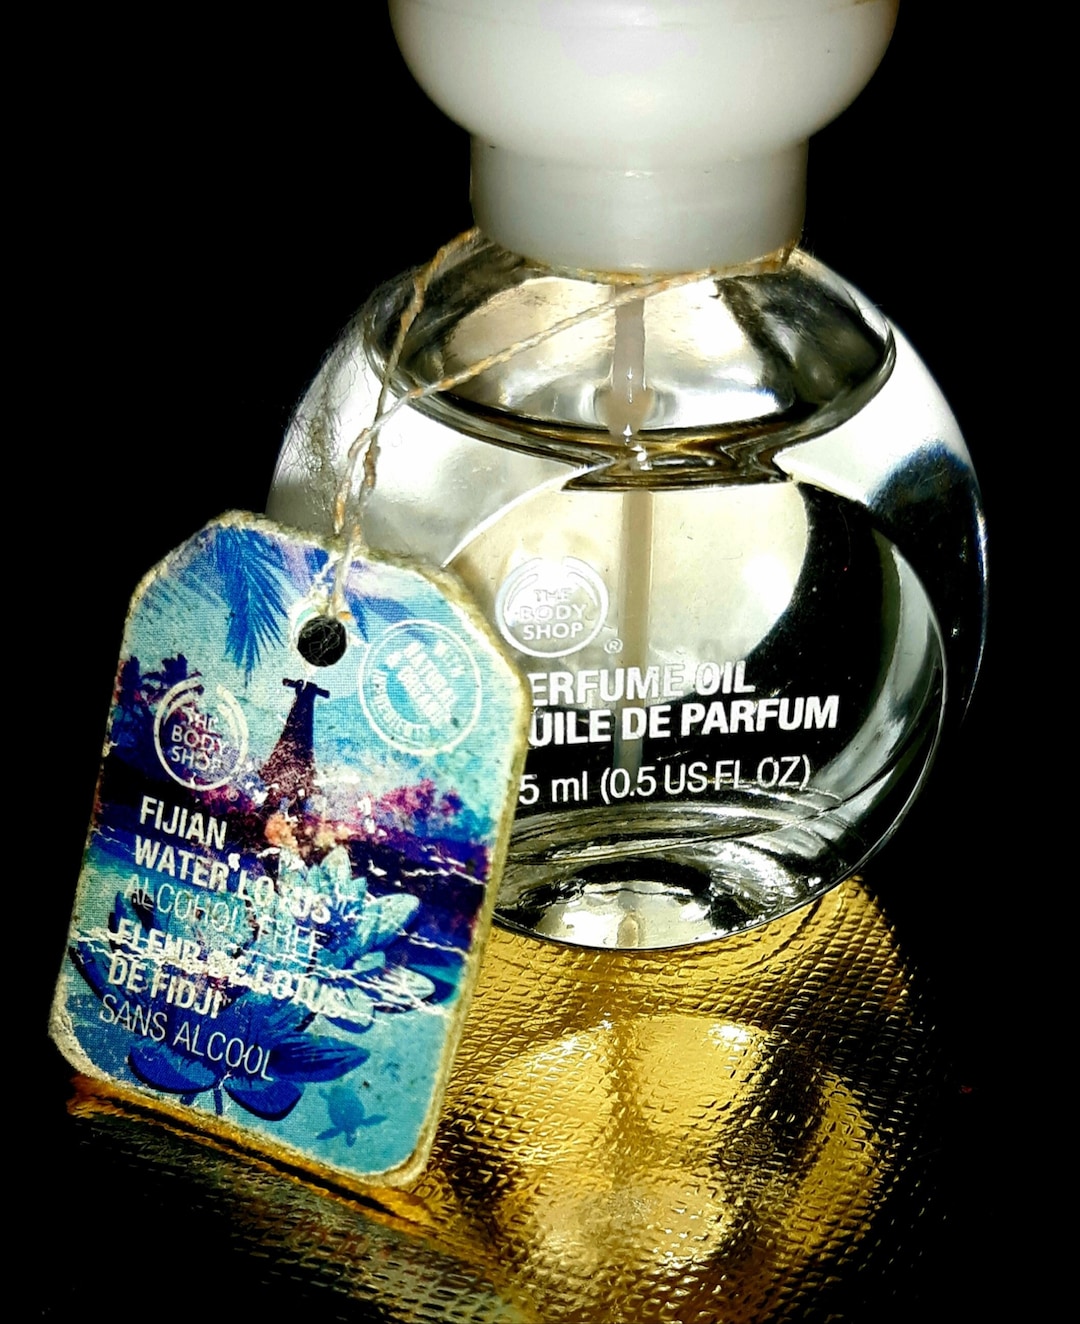 Klusjesman Arbeid Let op The Body Shop Fijian Water Lotus Perfume Oil 0.5 FL OZ 15 Ml - Etsy